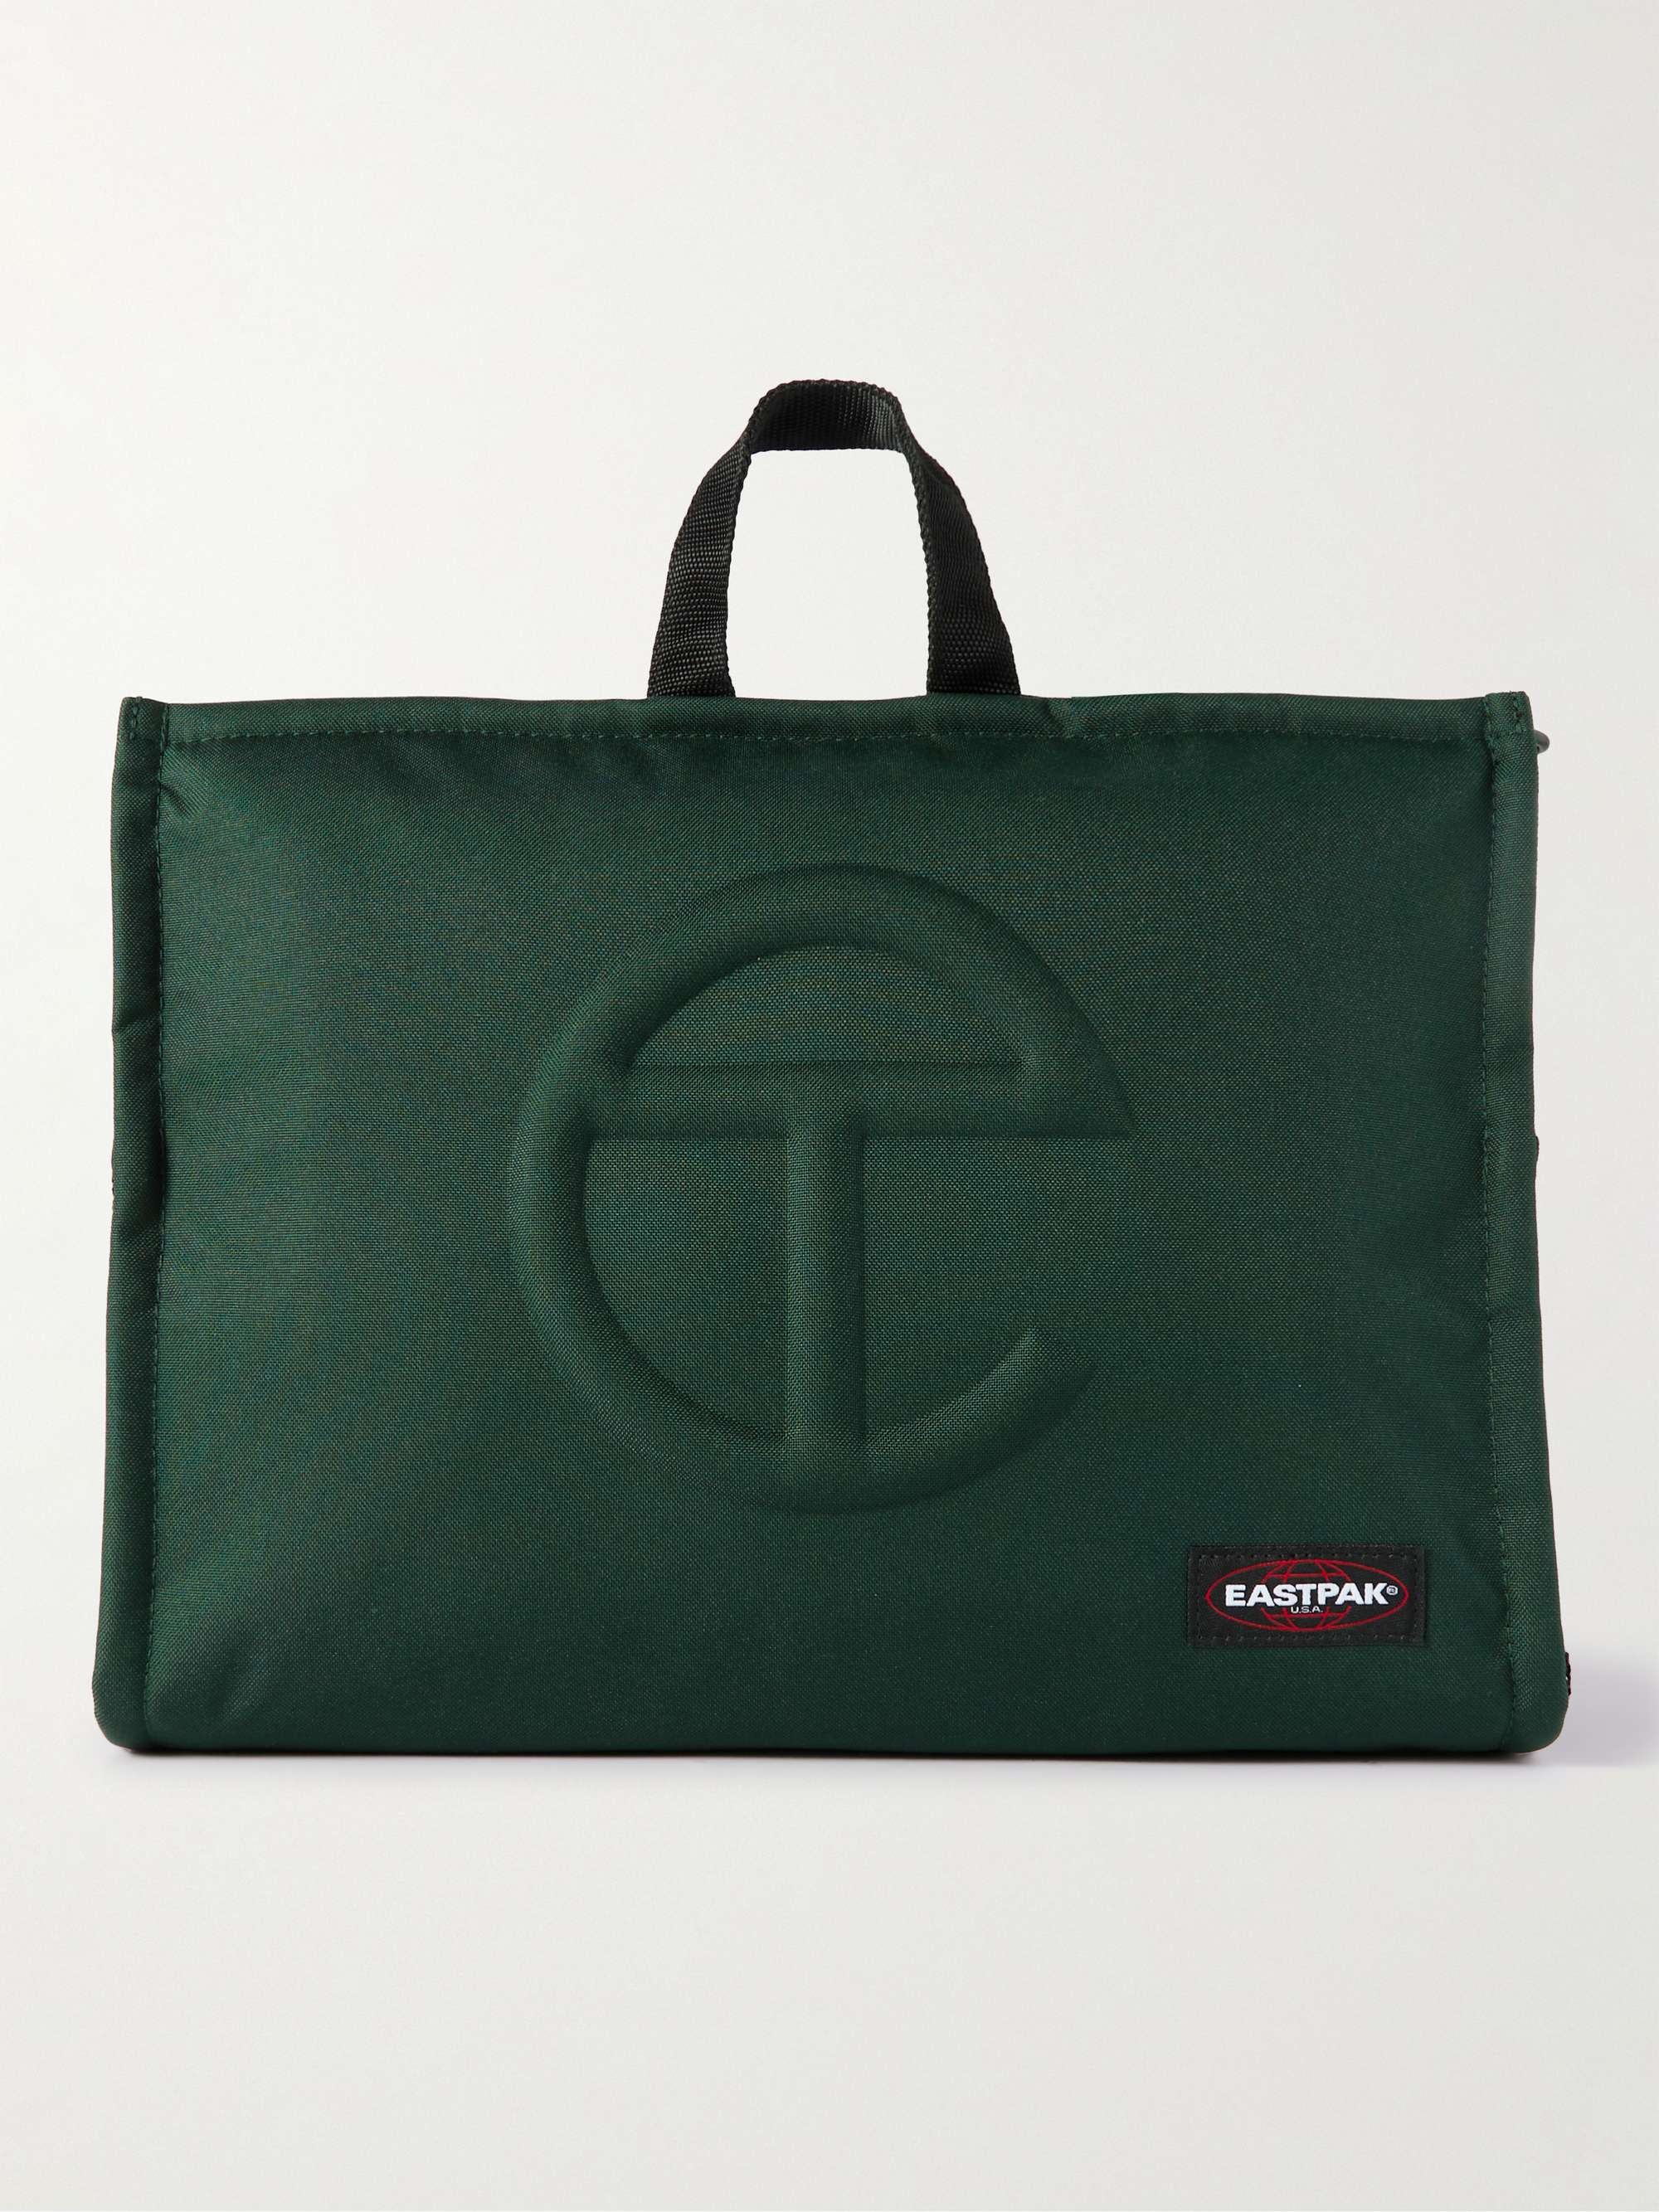 EASTPAK + Telfar Medium Canvas Tote Bag for Men | MR PORTER